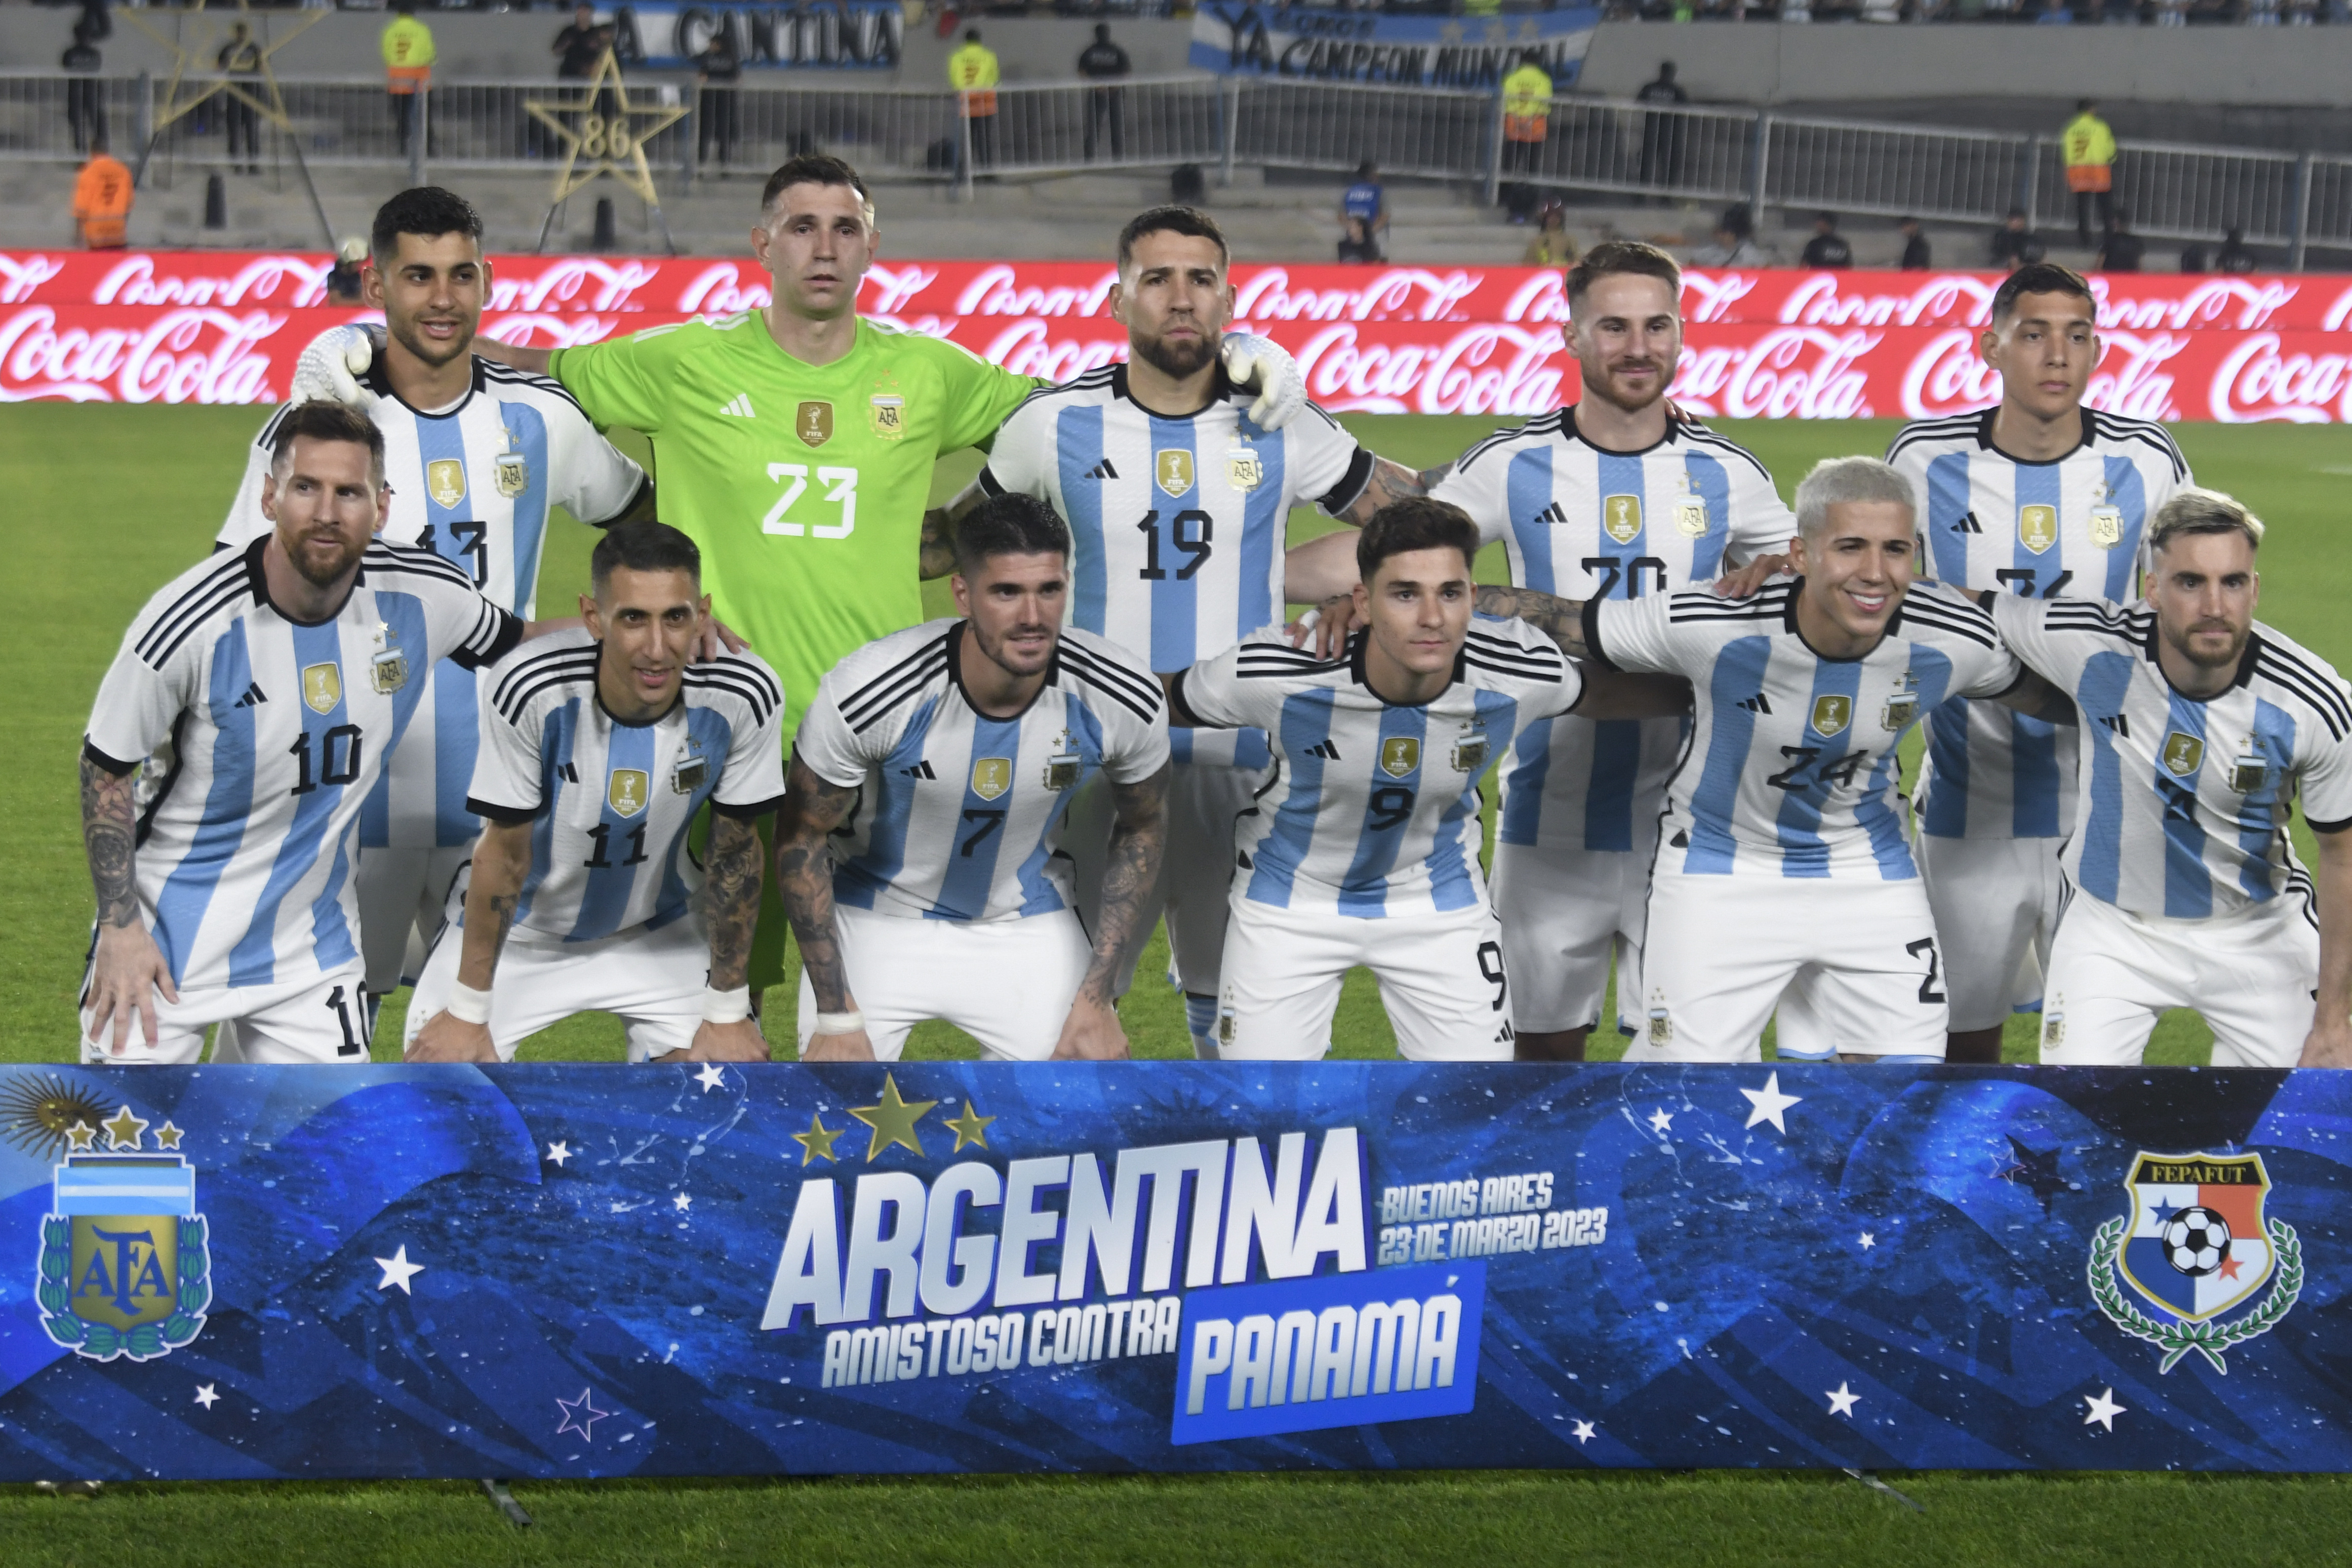 Los jugadores argentinos posan antes del amistoso contra Panamá en Buenos Aires (AP Foto/Gustavo Garello)